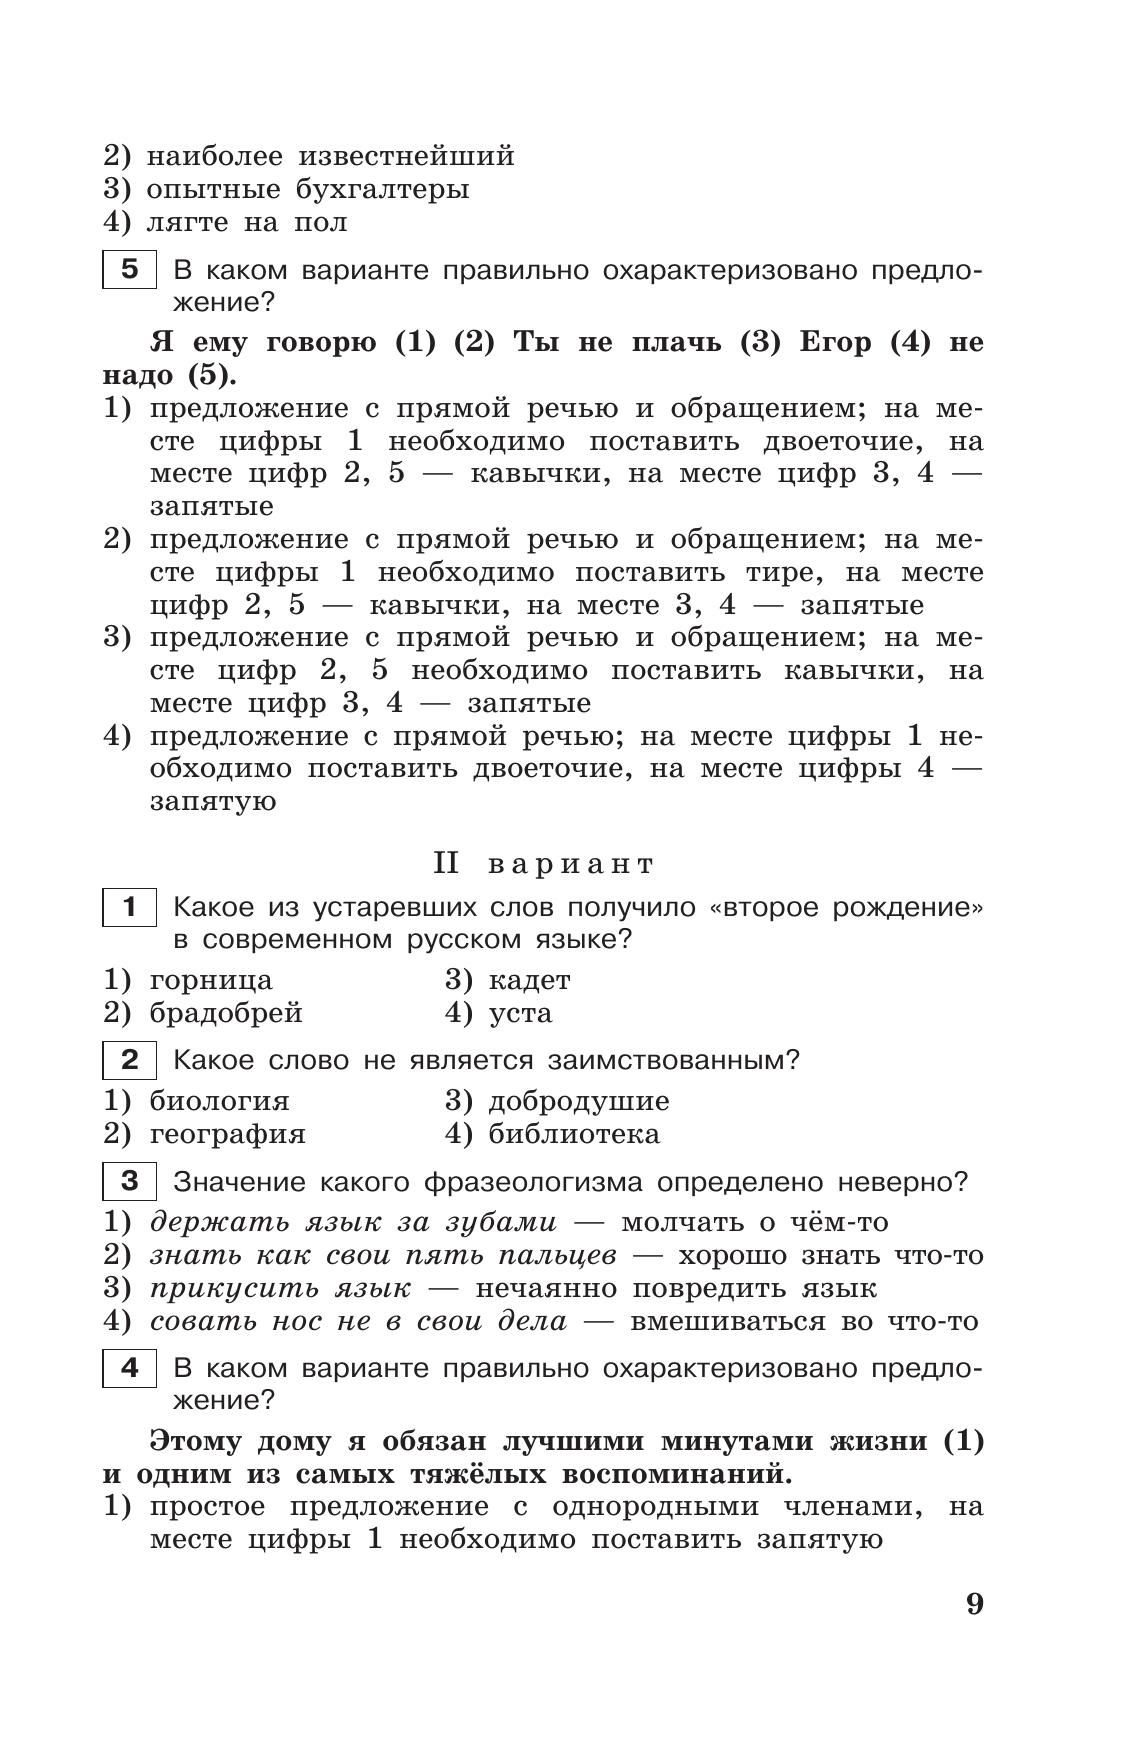 Тестовые задания по русскому языку. 7 класс. 2